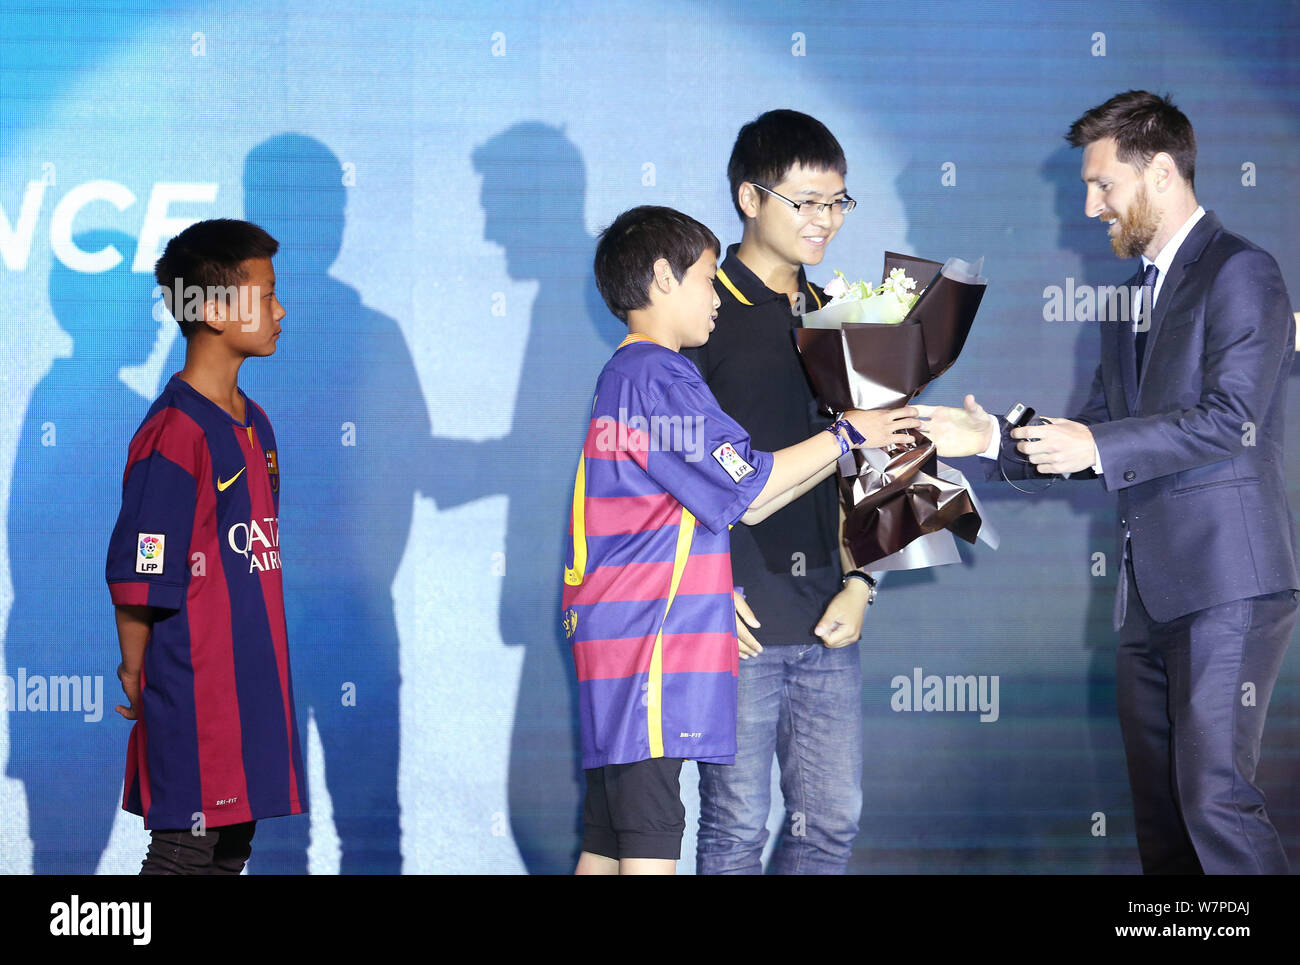 L'attaquant argentin Lionel Messi du FC Barcelone, à droite, reçoit des fleurs d'un jeune fan chinois au cours d'une conférence de presse pour l'expérience Messi Banque D'Images